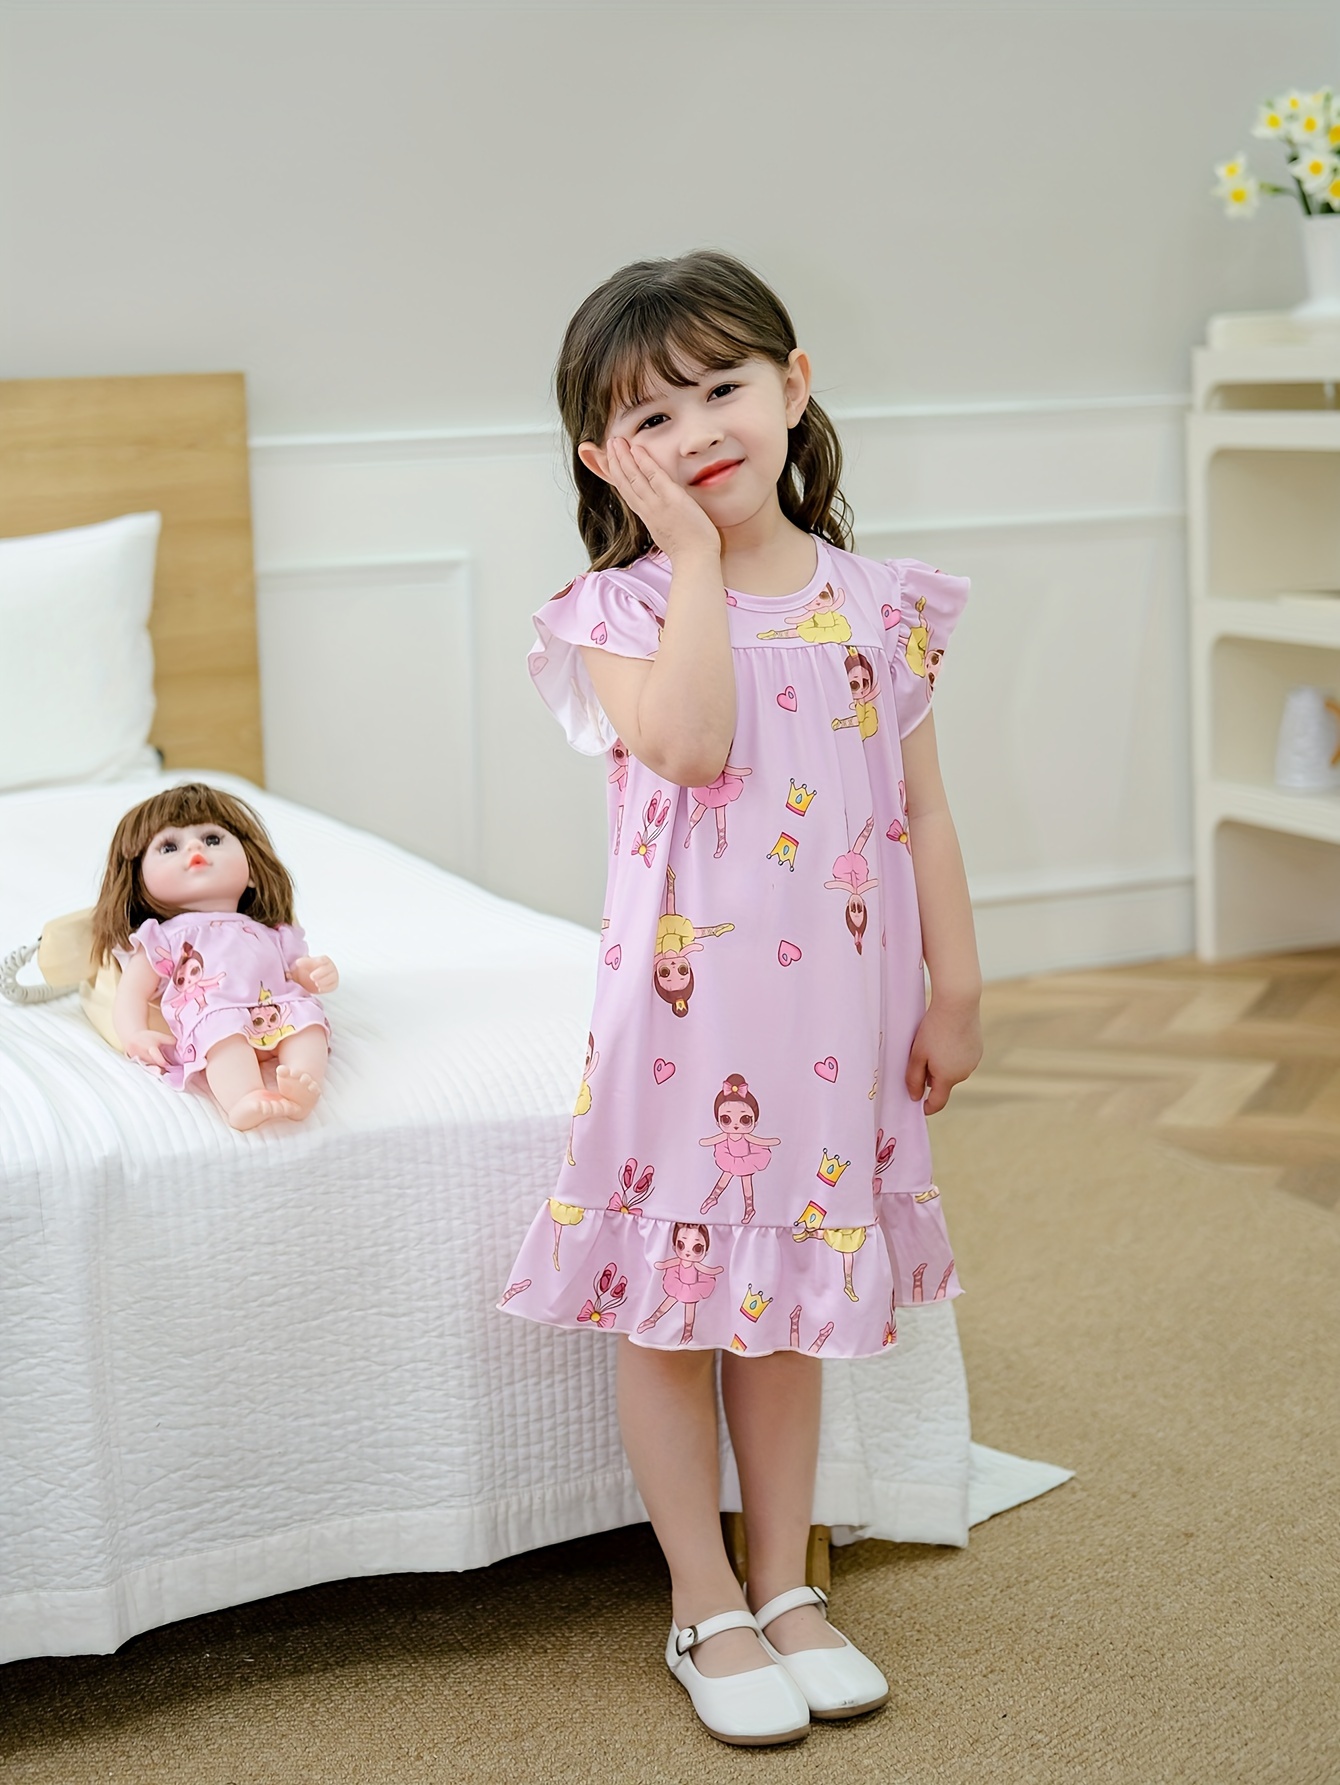 Matching Doll & Girls Thin Night Dress 2 Pieces Cartoon Print Sleepwear 38.1 Cm Doll Nightwear (Not Include Doll)